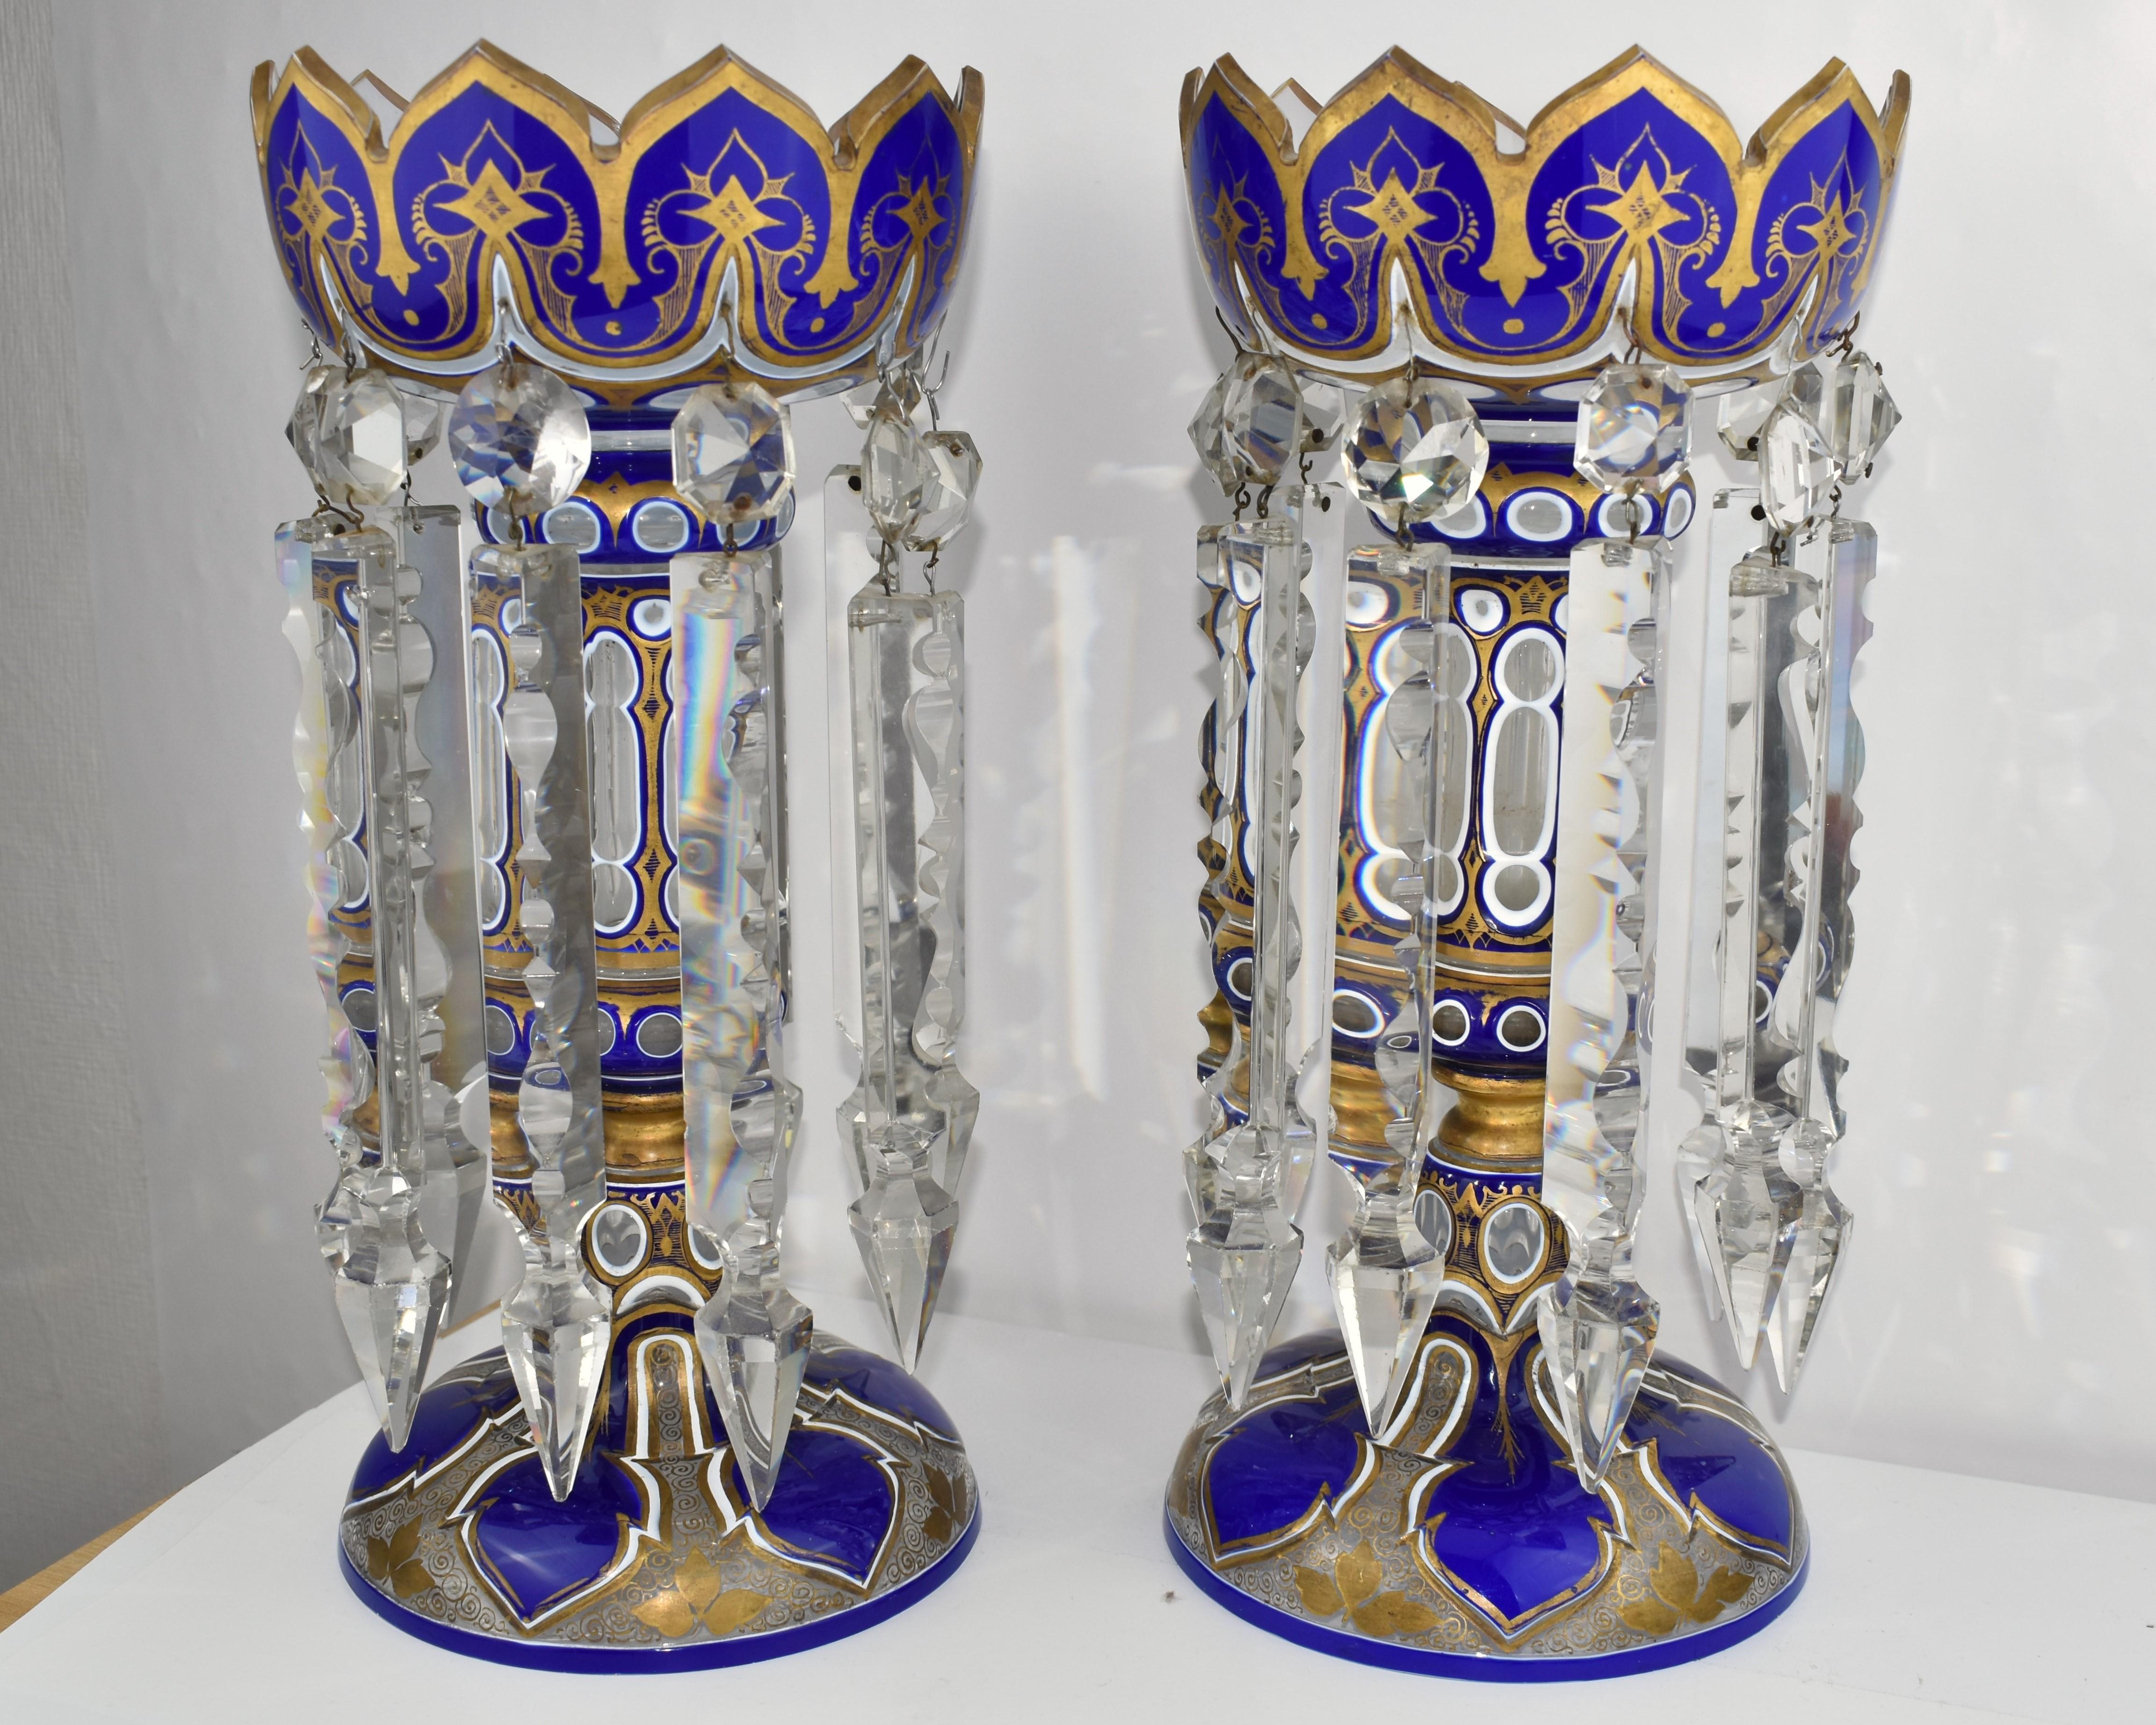 Paar blaue Glaslüster in antikem Doppel-Overlay (3 Schichten) aus geschliffenem Glas

Spitzenqualität und beeindruckende Größe 

Reichhaltig geschliffenes Glas in verschiedenen Formen und rundum mit Goldemaille verziert

Jeder Lüster mit mehreren